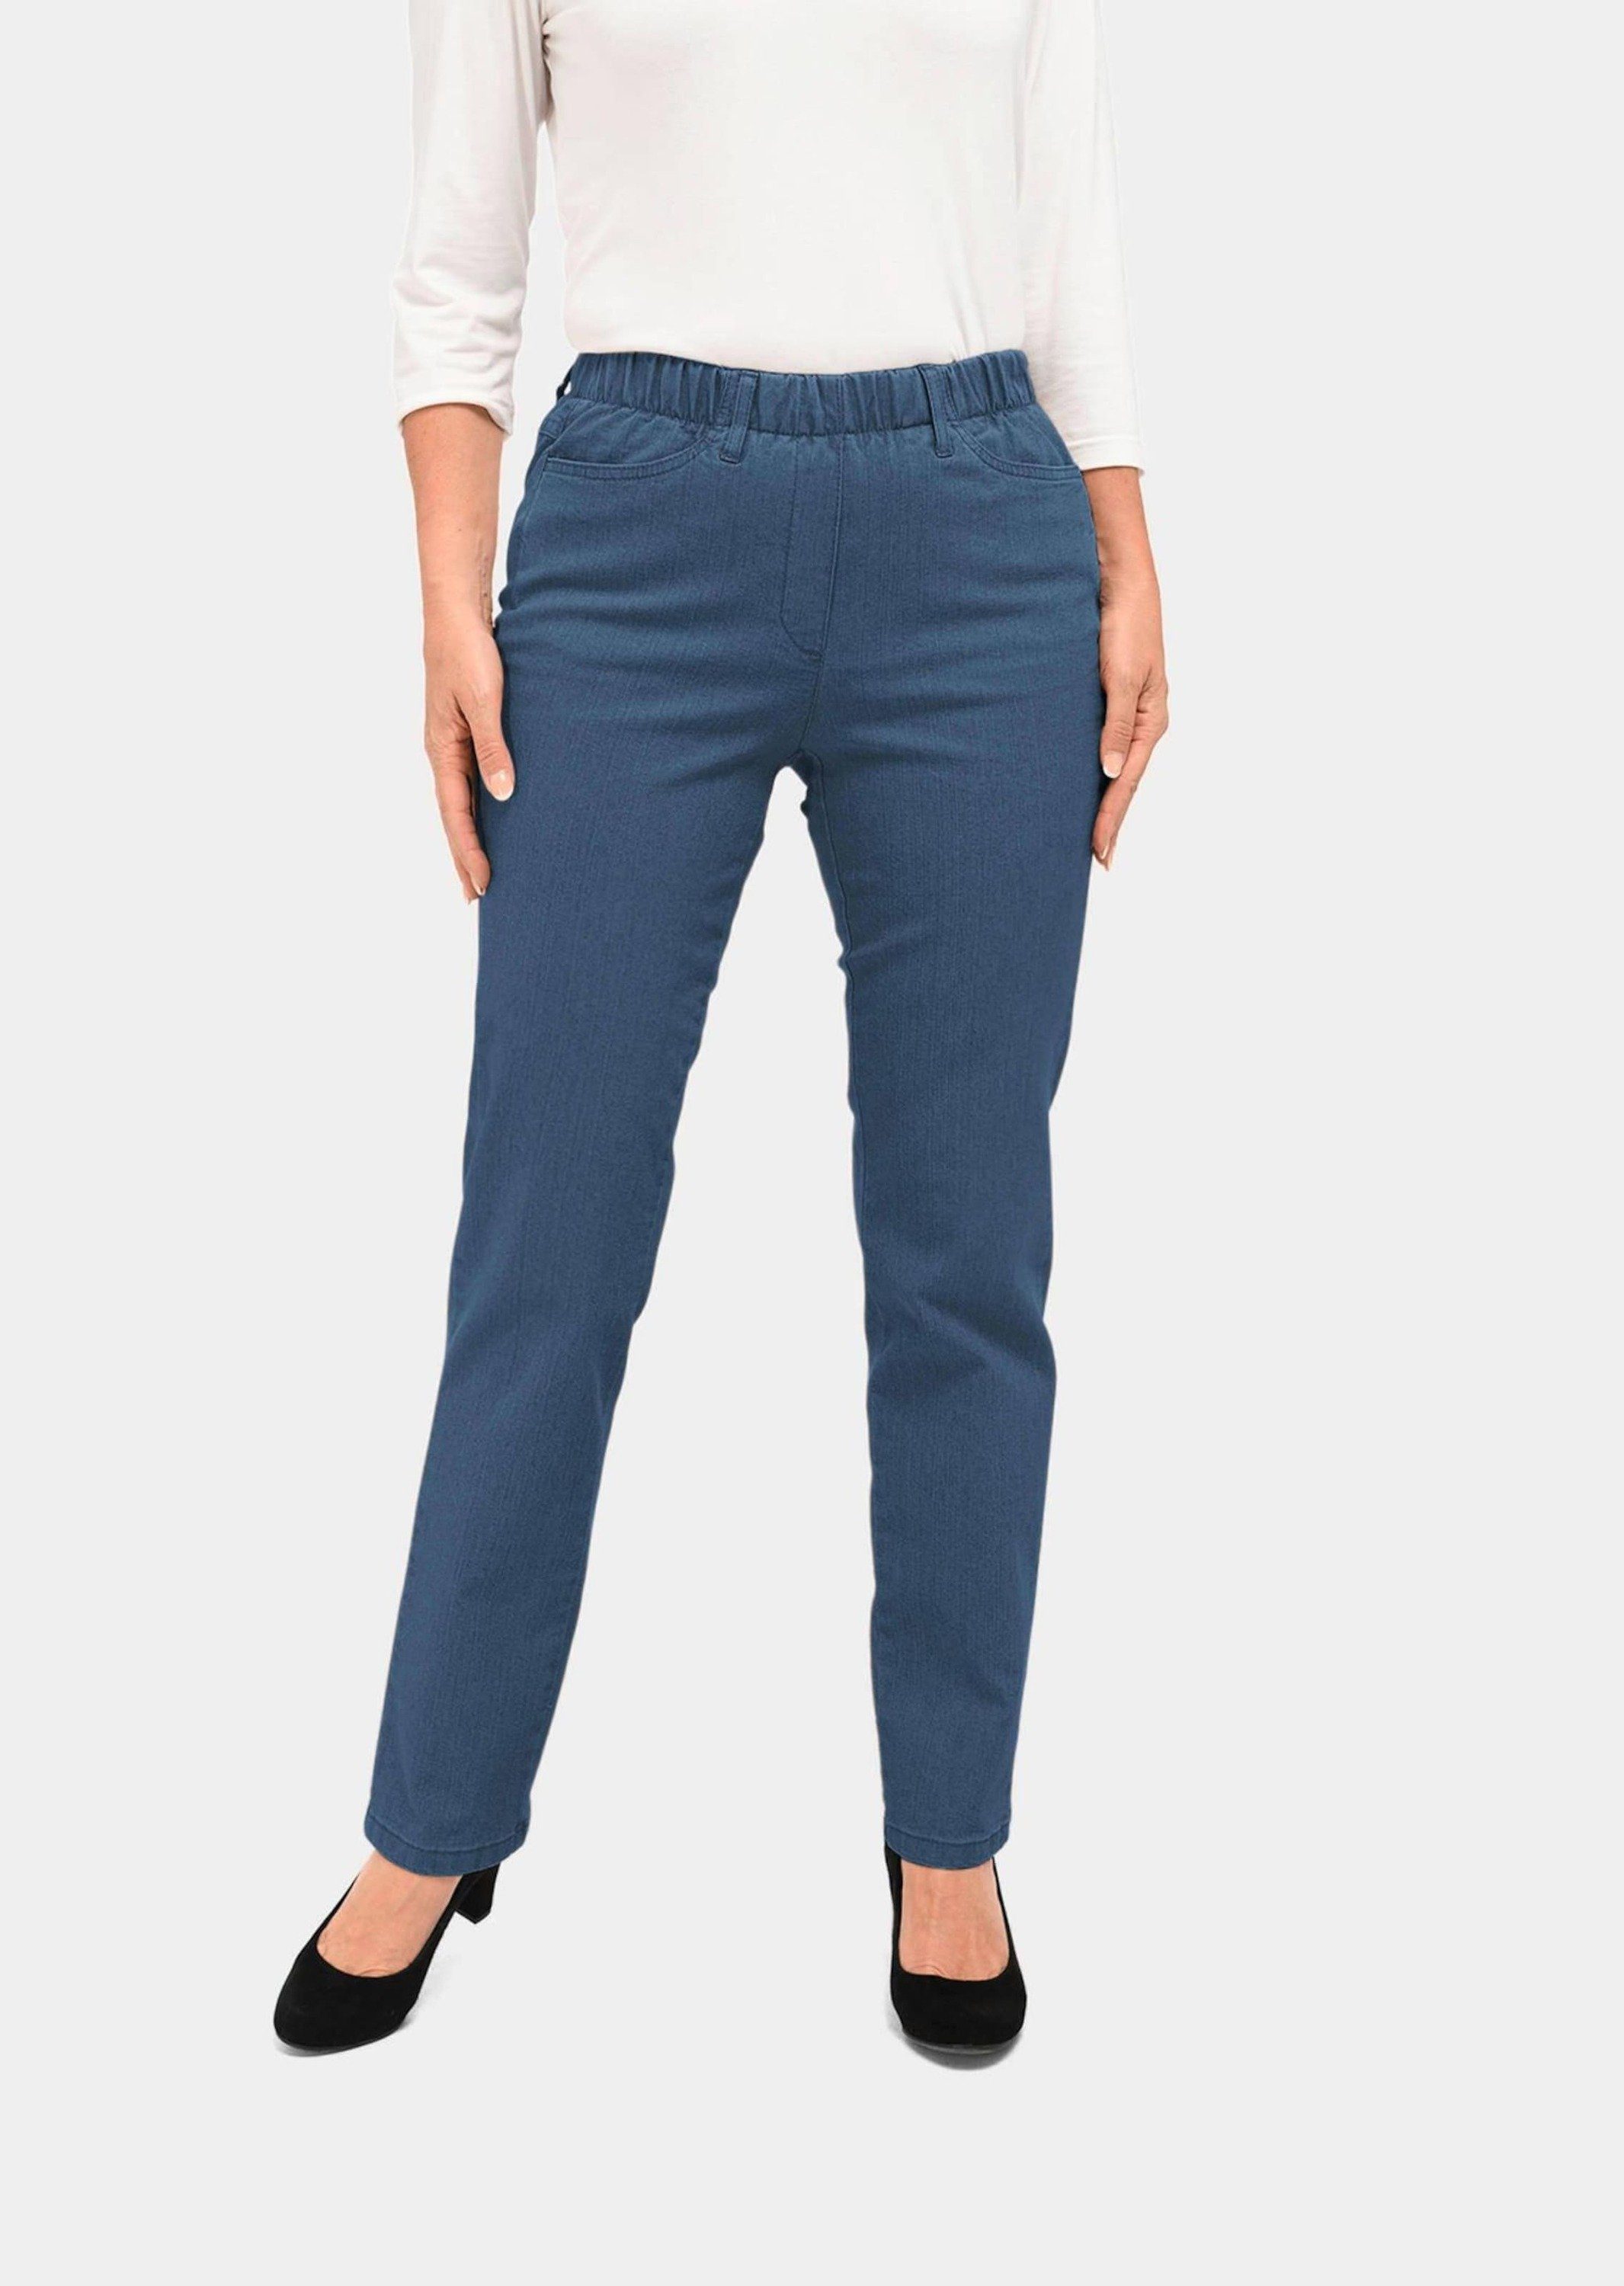 GOLDNER Bequeme Jeans Kurzgröße: Klassische Jeansschlupfhose LOUISA hellblau